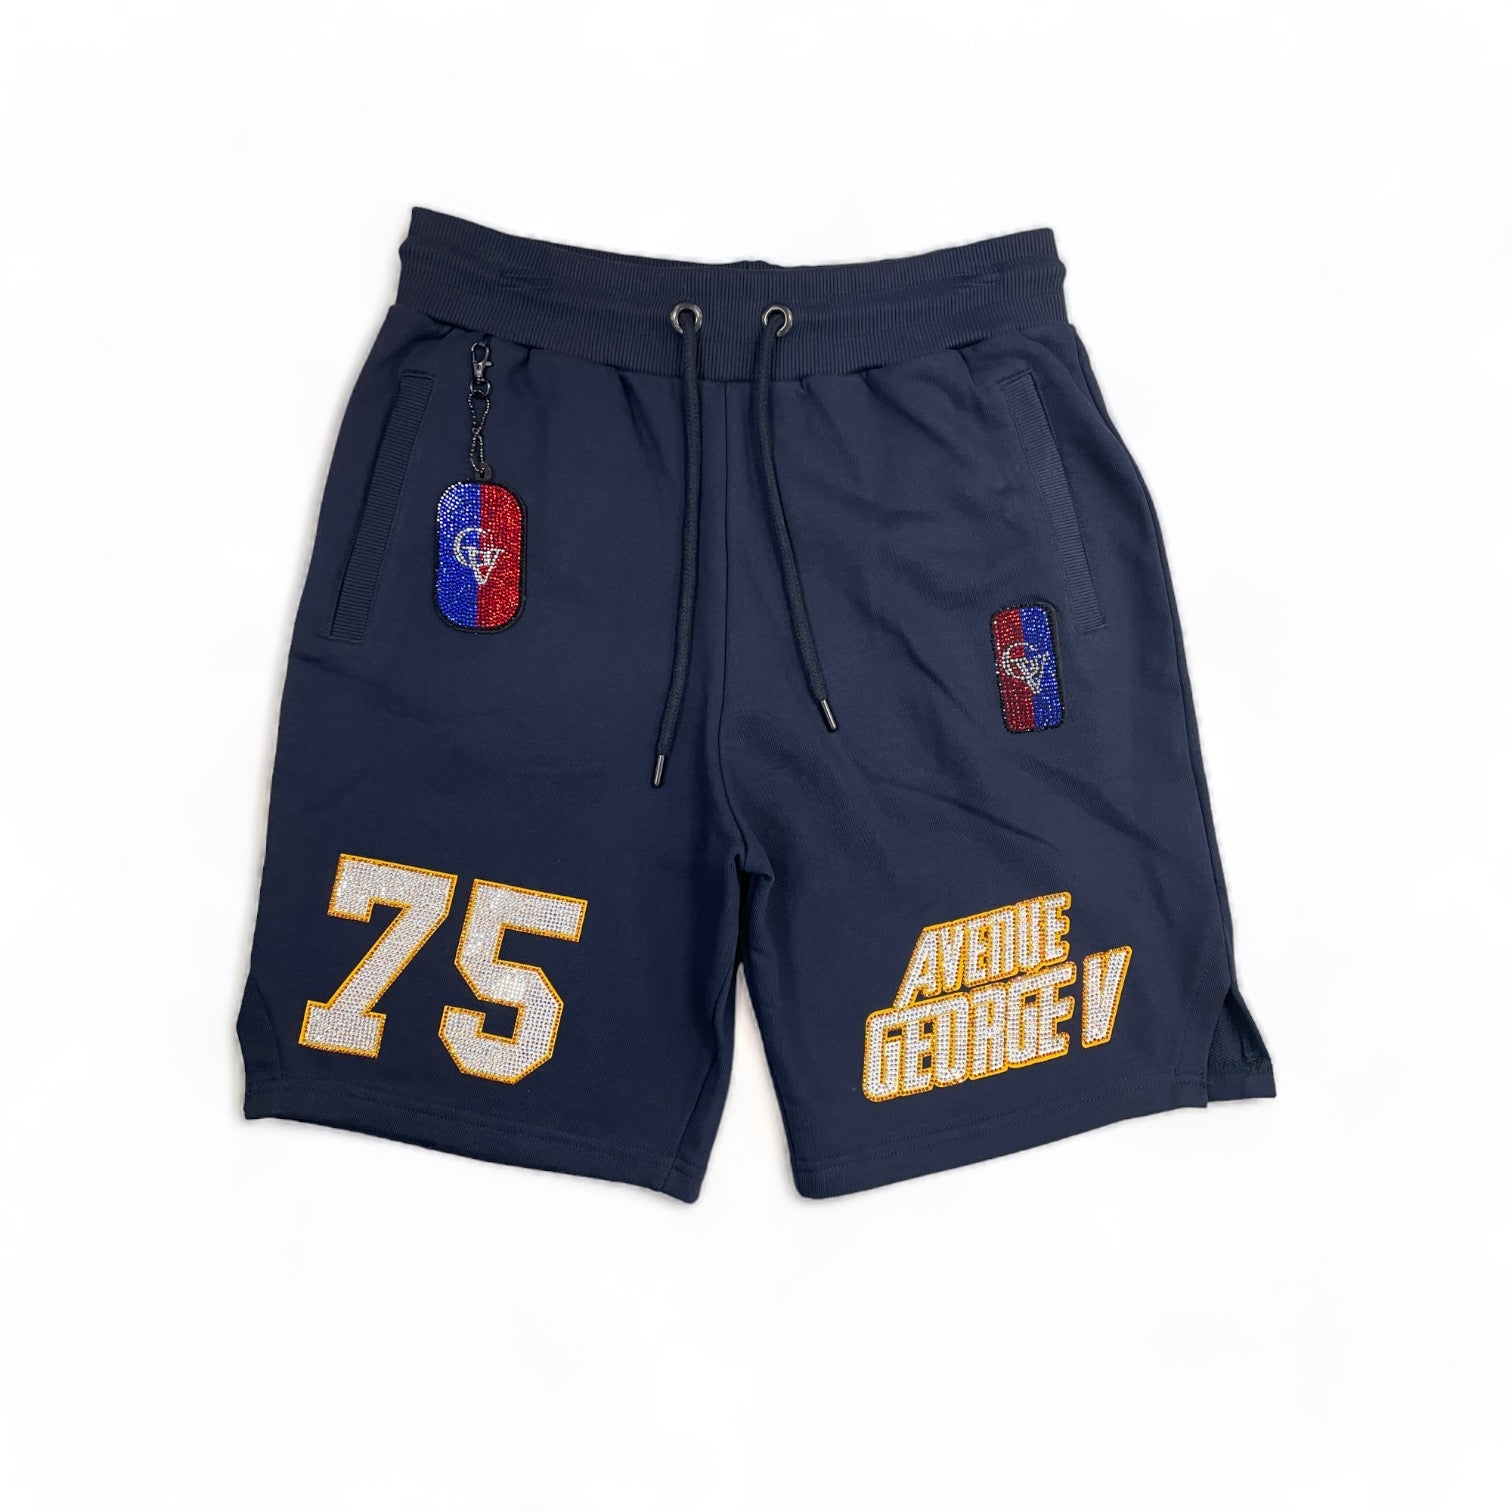 George V 75 Shorts